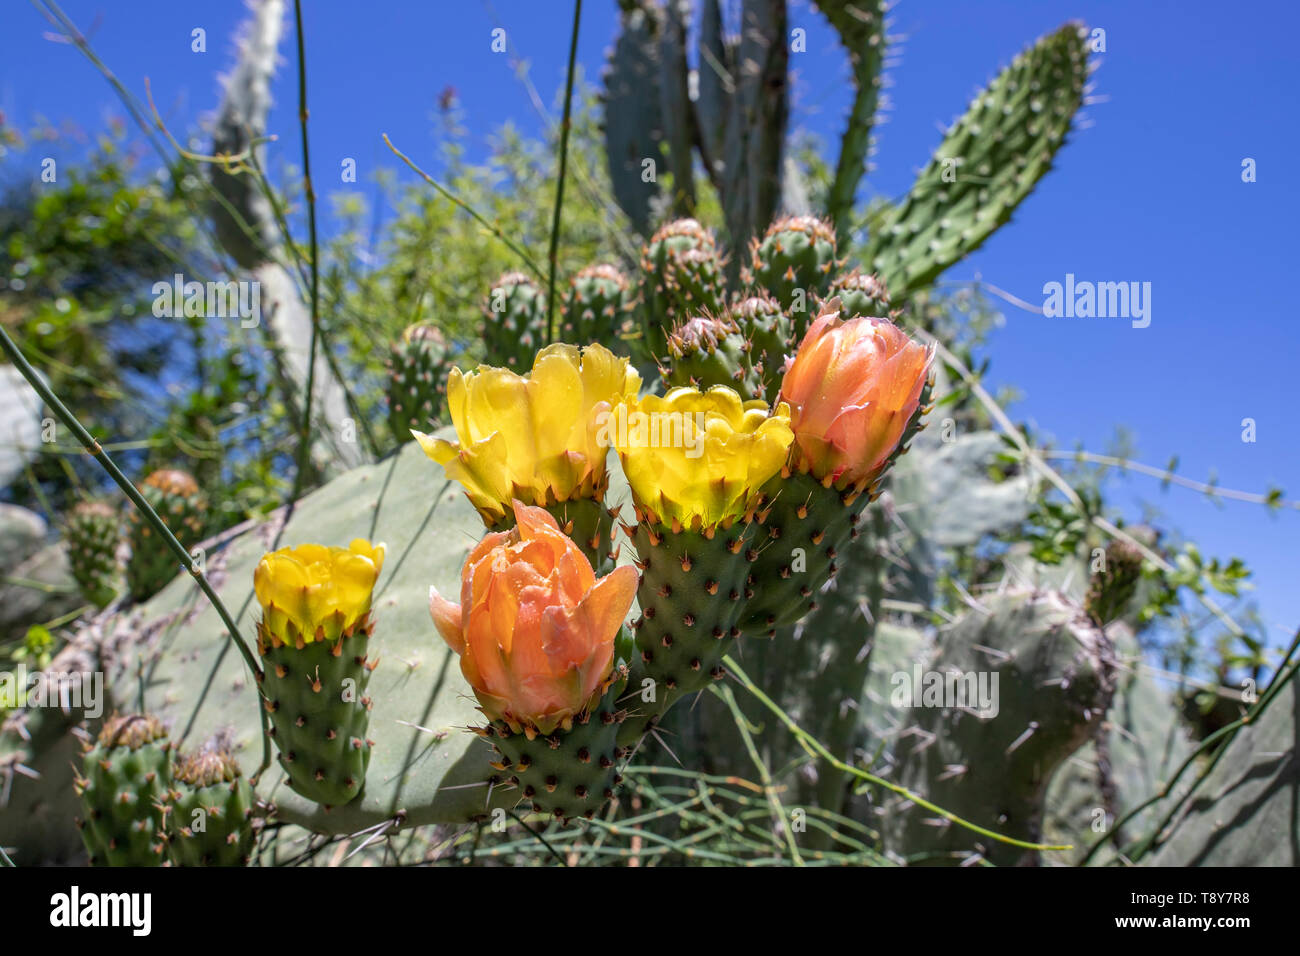 Sabra cactus Knospen und Blüten gegen einen verschwommenen Hintergrund der stacheliges Dickicht closeup Stockfoto